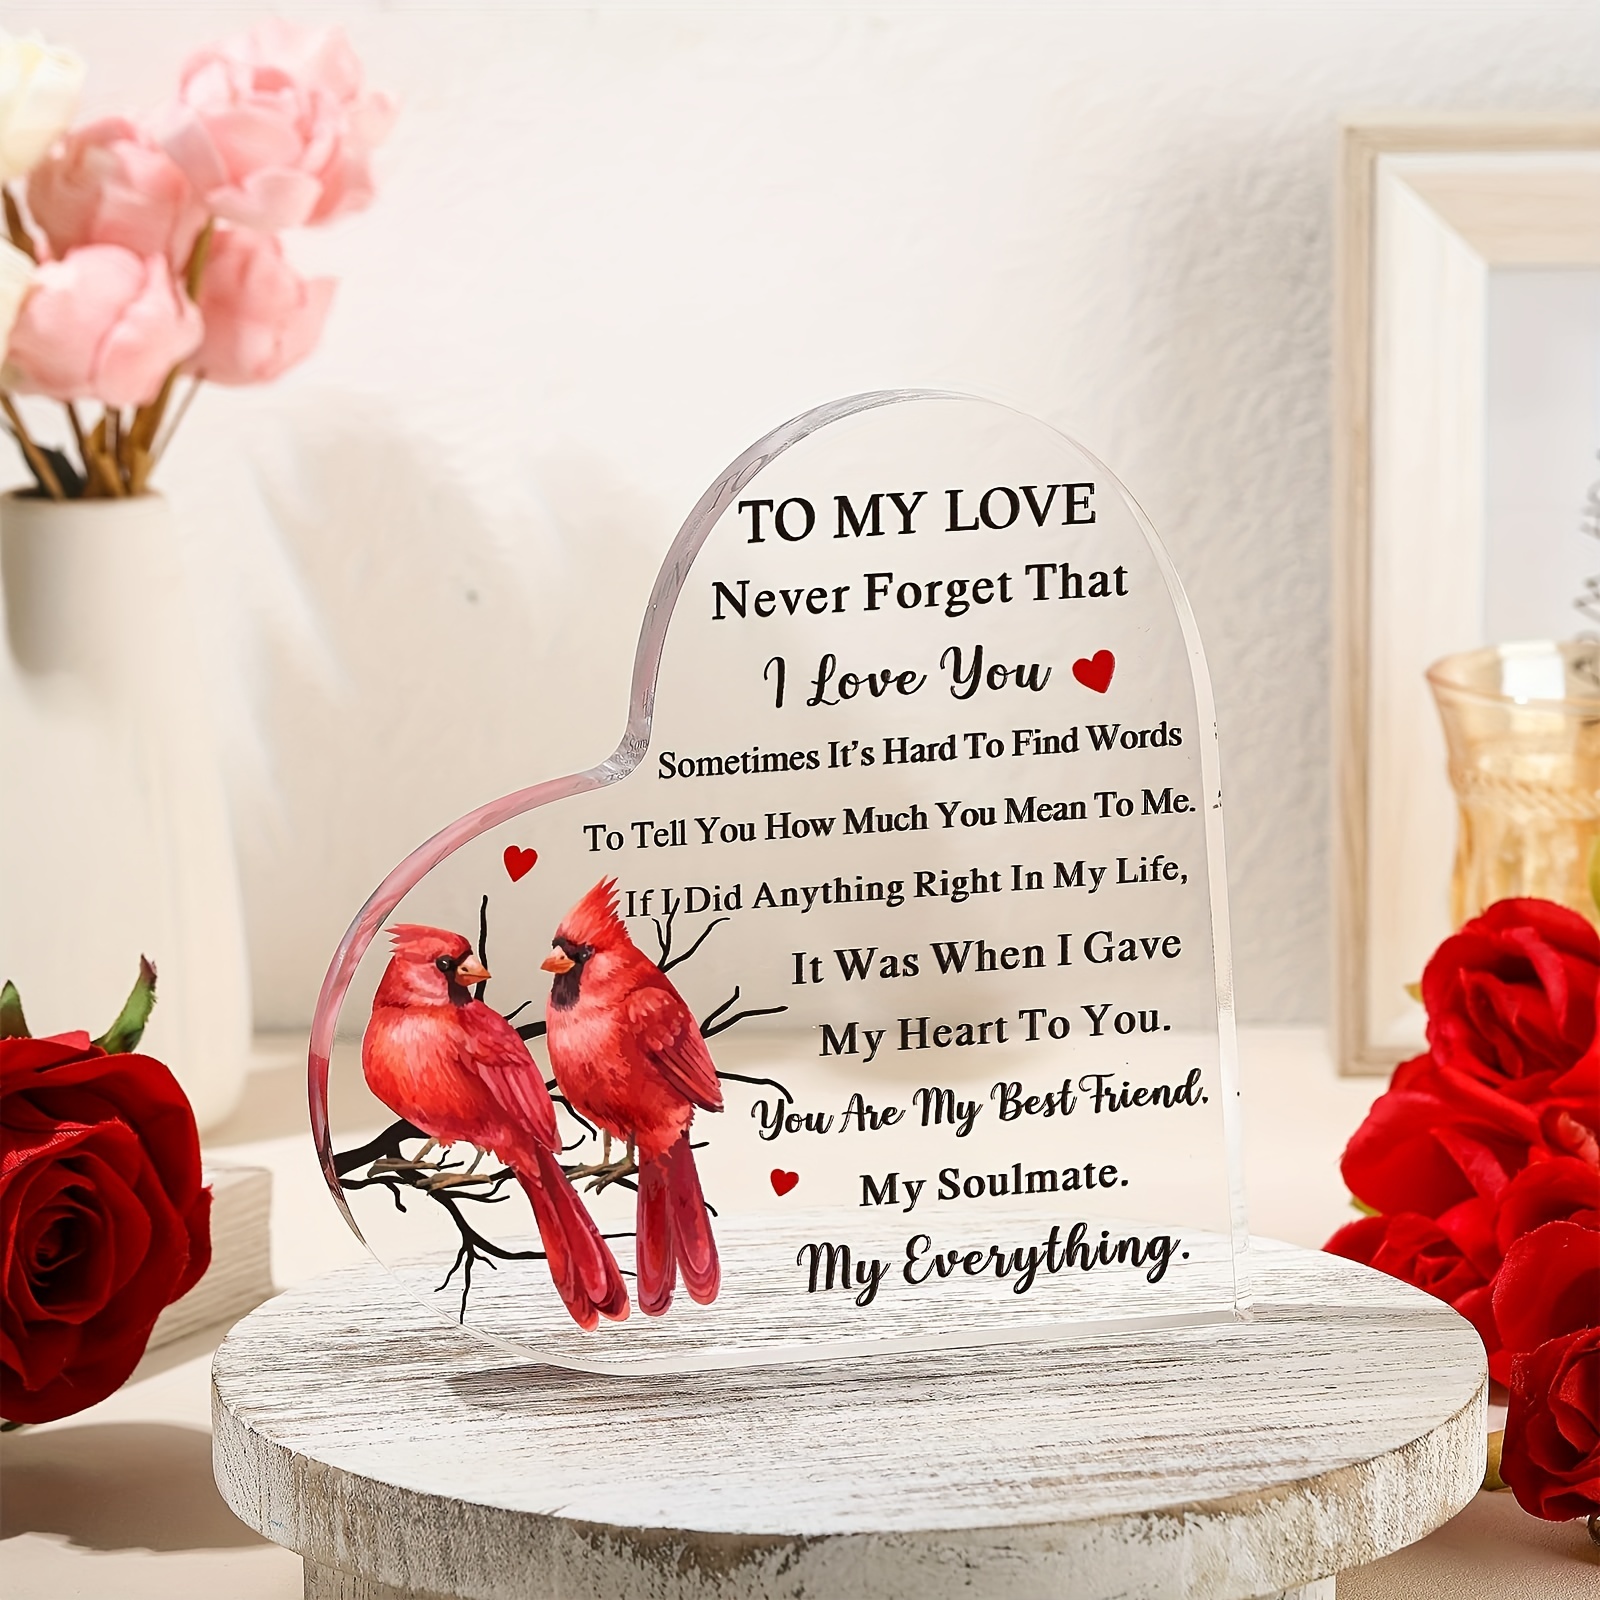 El regalo perfecto para San Valentín - Mundo Luxury - Roses to Love